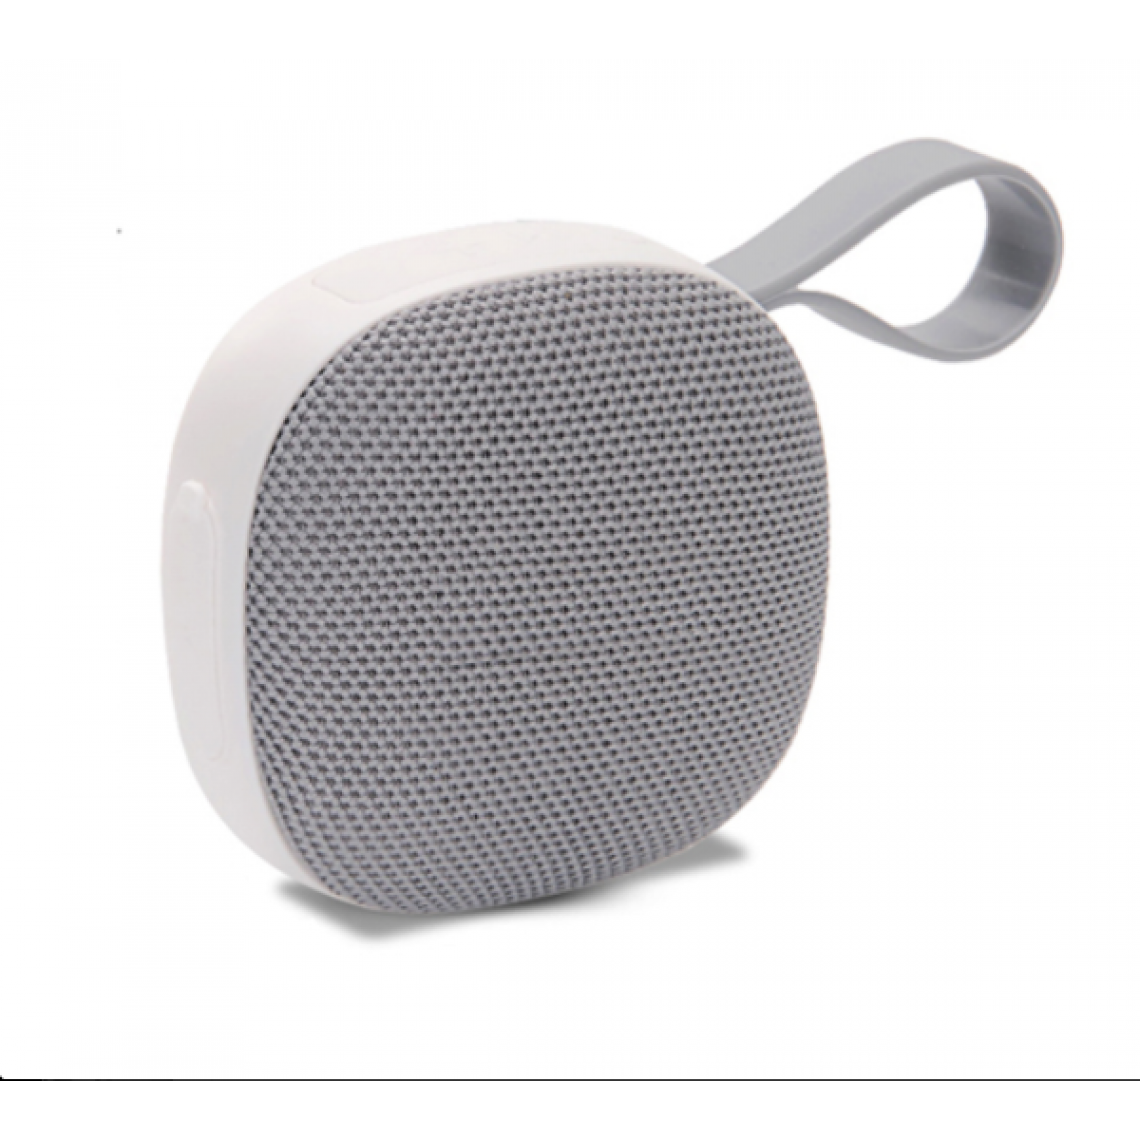 Universal - Haut-parleur Bluetooth imperméable mini haut-parleur portable sans fil radiateur basse musique stéréo 3D extérieur | haut-parleurs portables (gris) - Enceinte PC